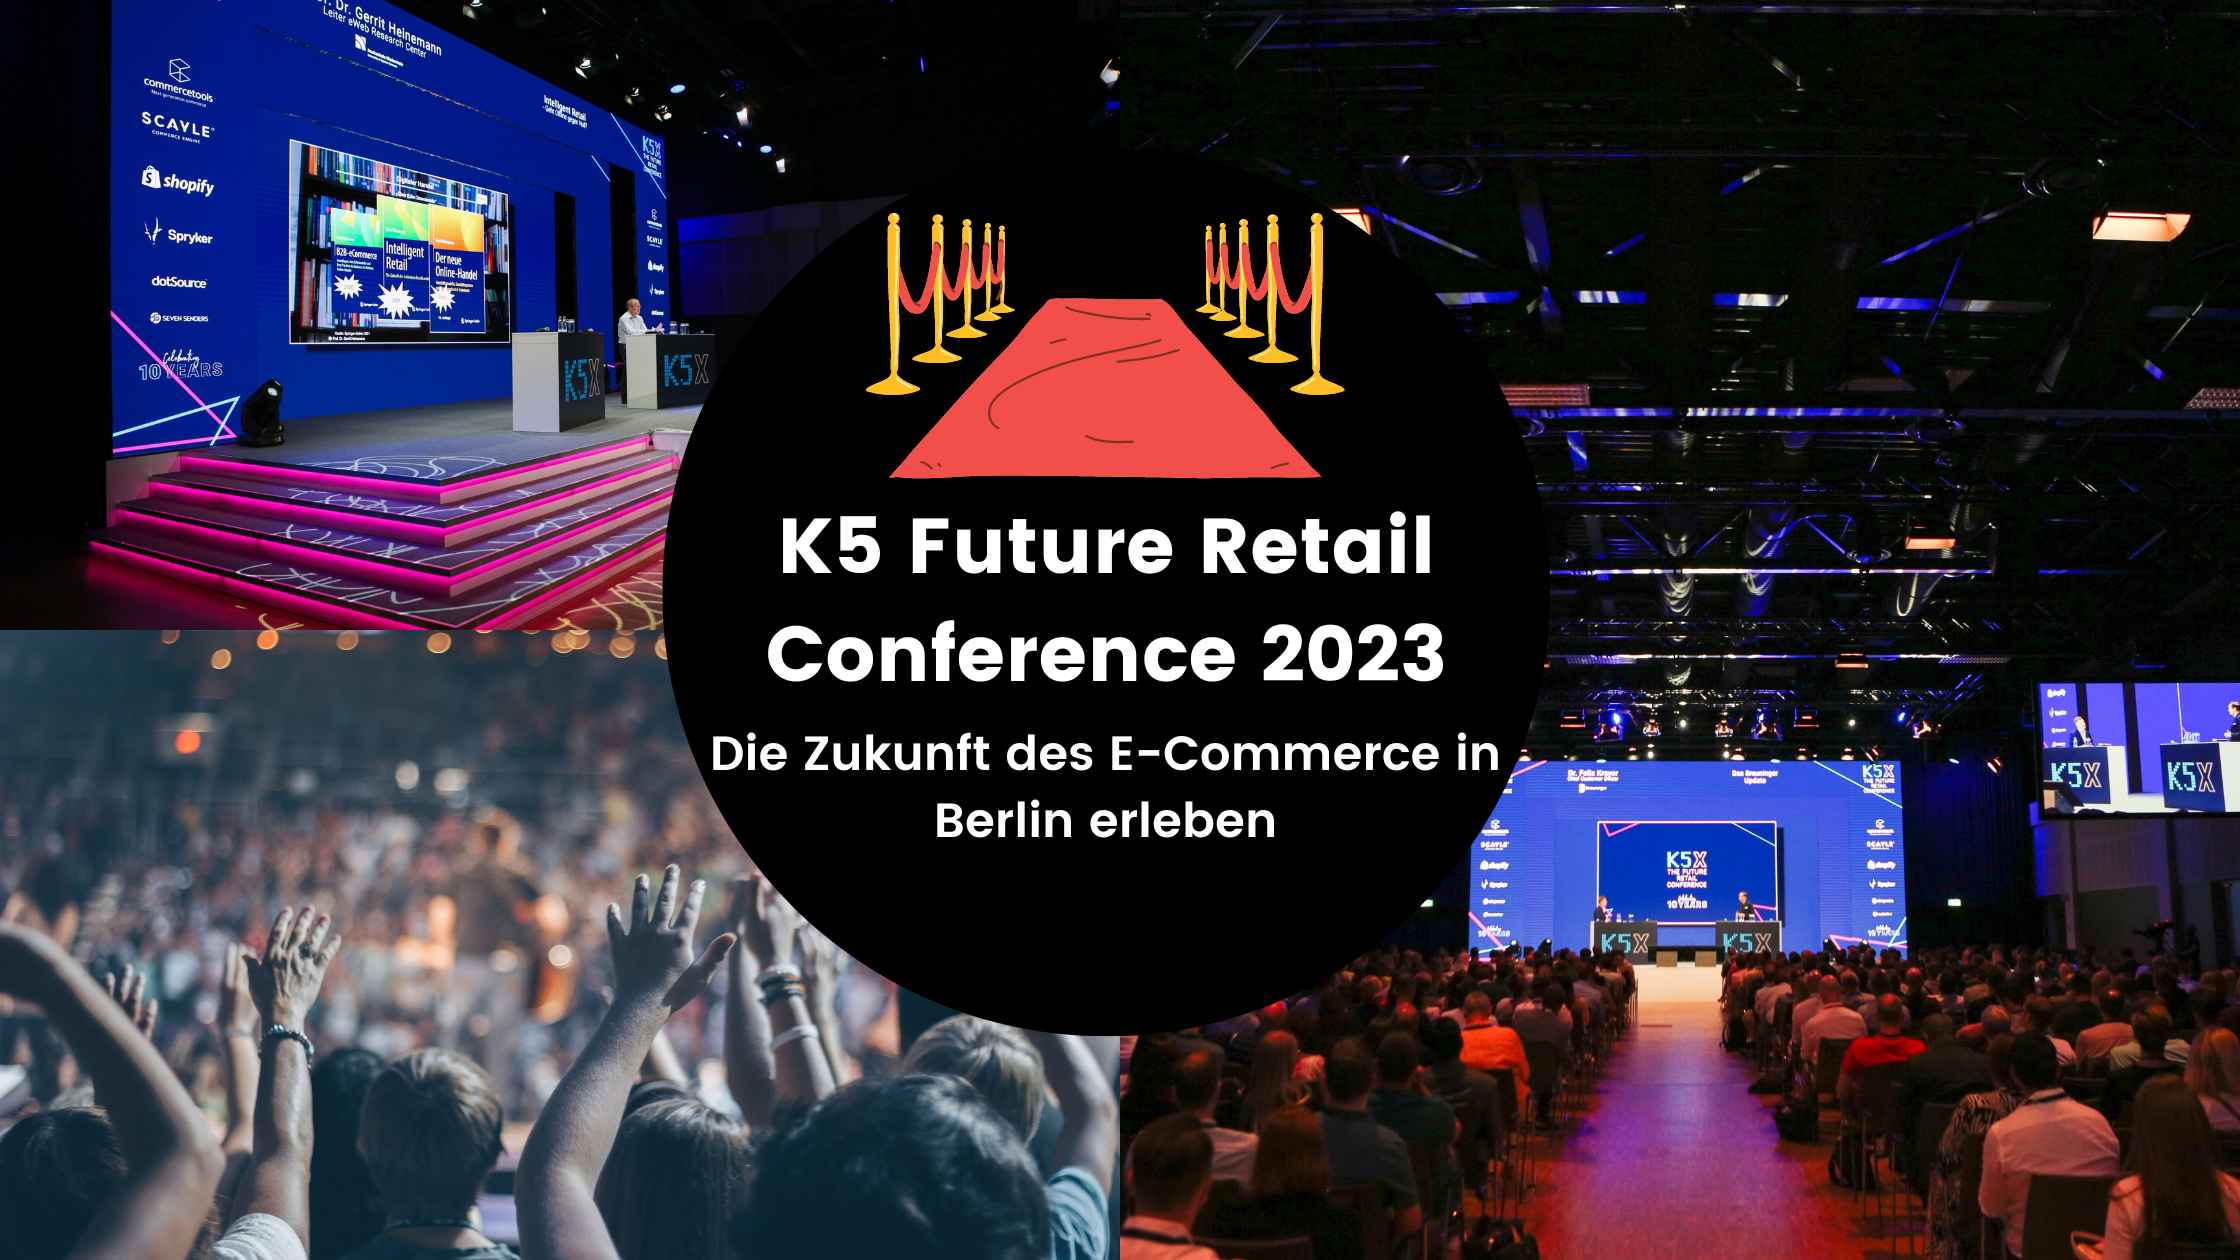 K5 Future Retail Conference 2023: Die Zukunft des E-Commerce in Berlin erleben